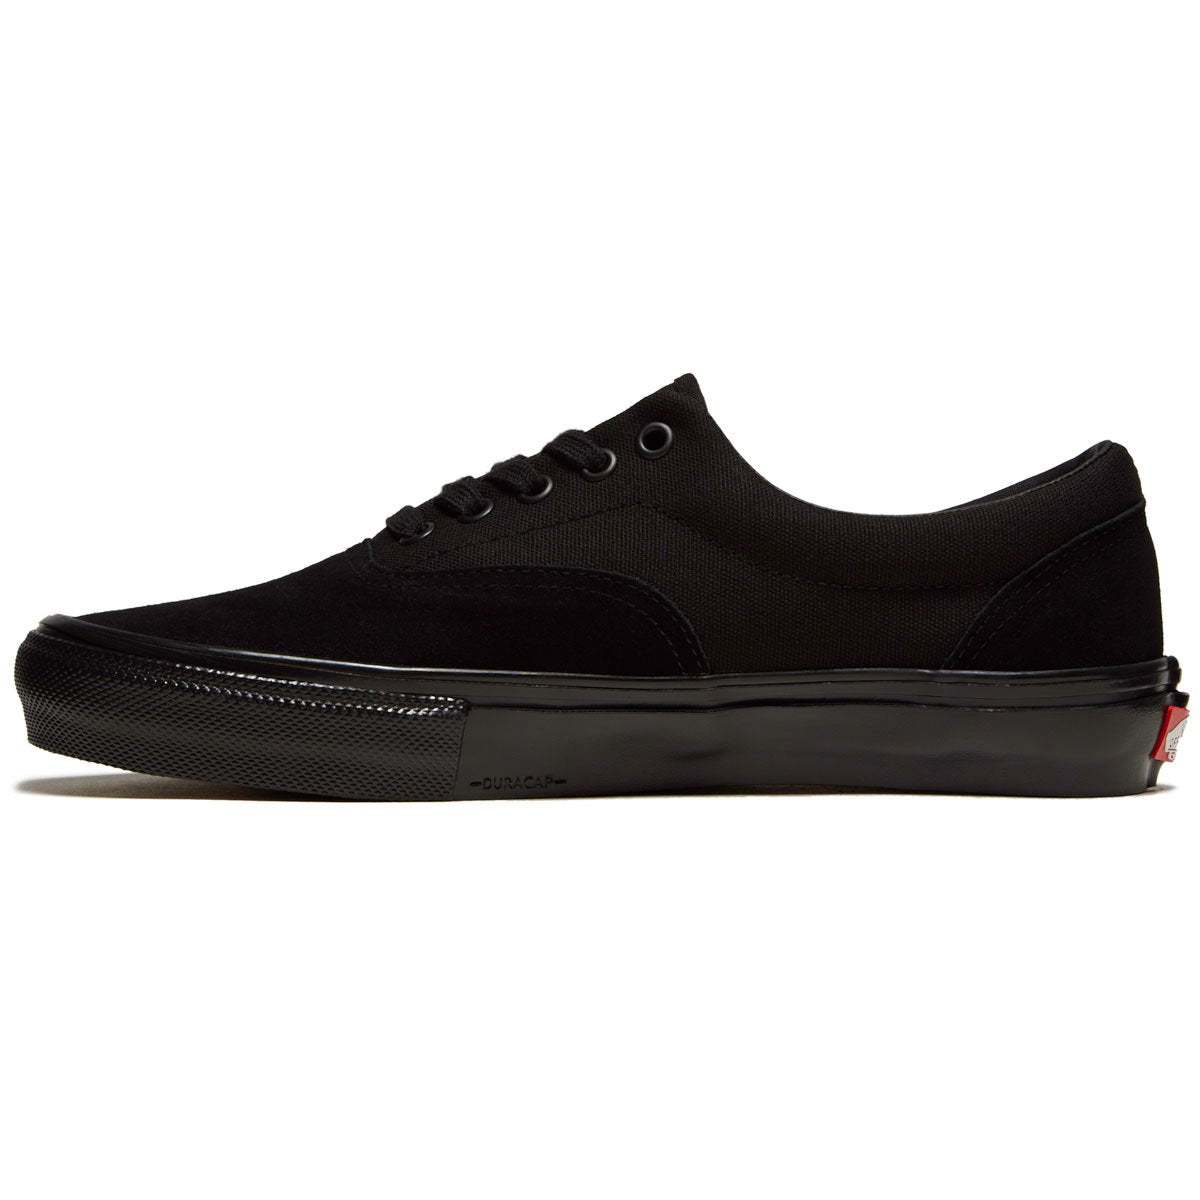 Vans Skate Era Shoes - Black/Black image 2